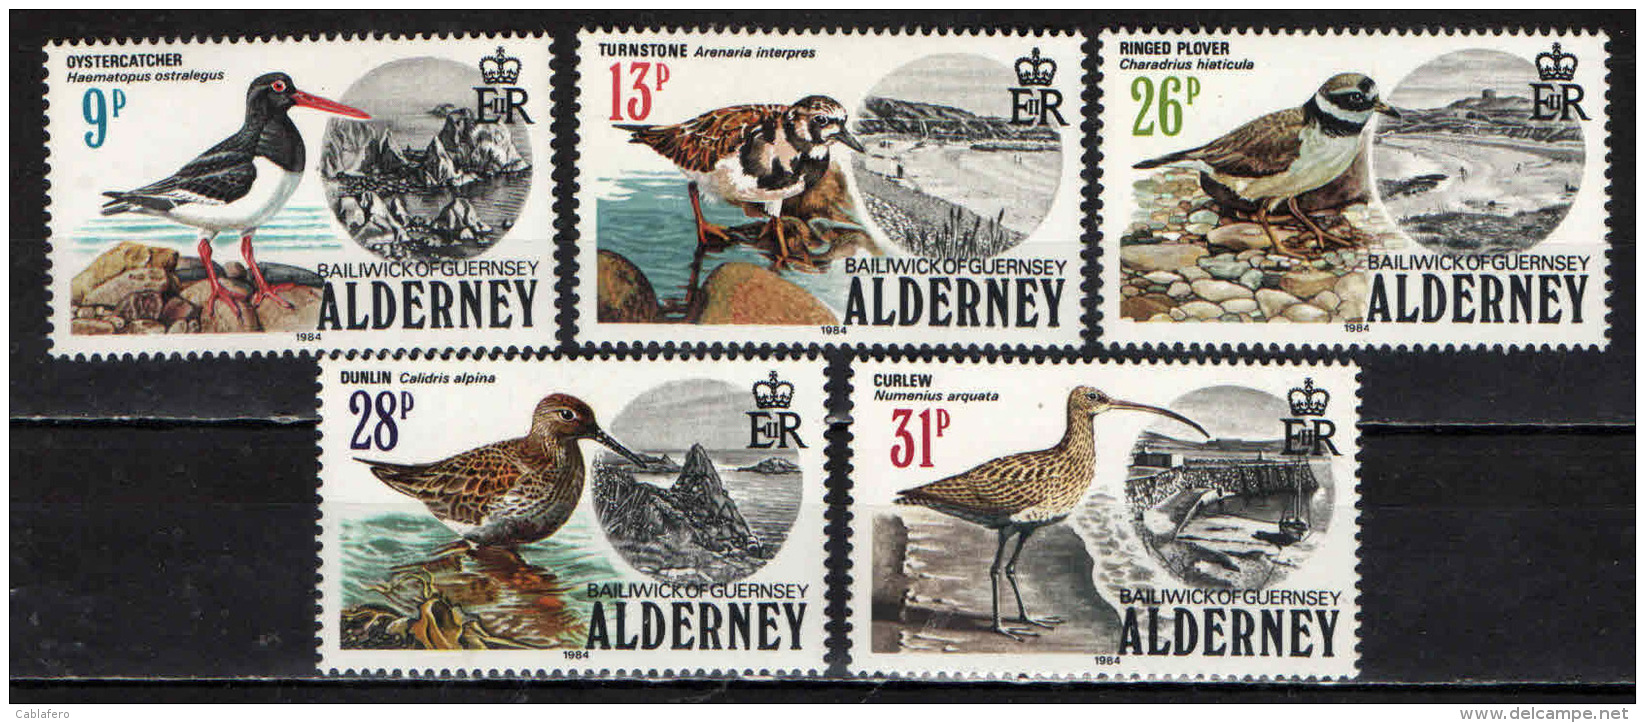 ALDERNEY - 1984 - UCCELLI E BAIE DI ALDERNEY - BIRDS - MNH - Alderney